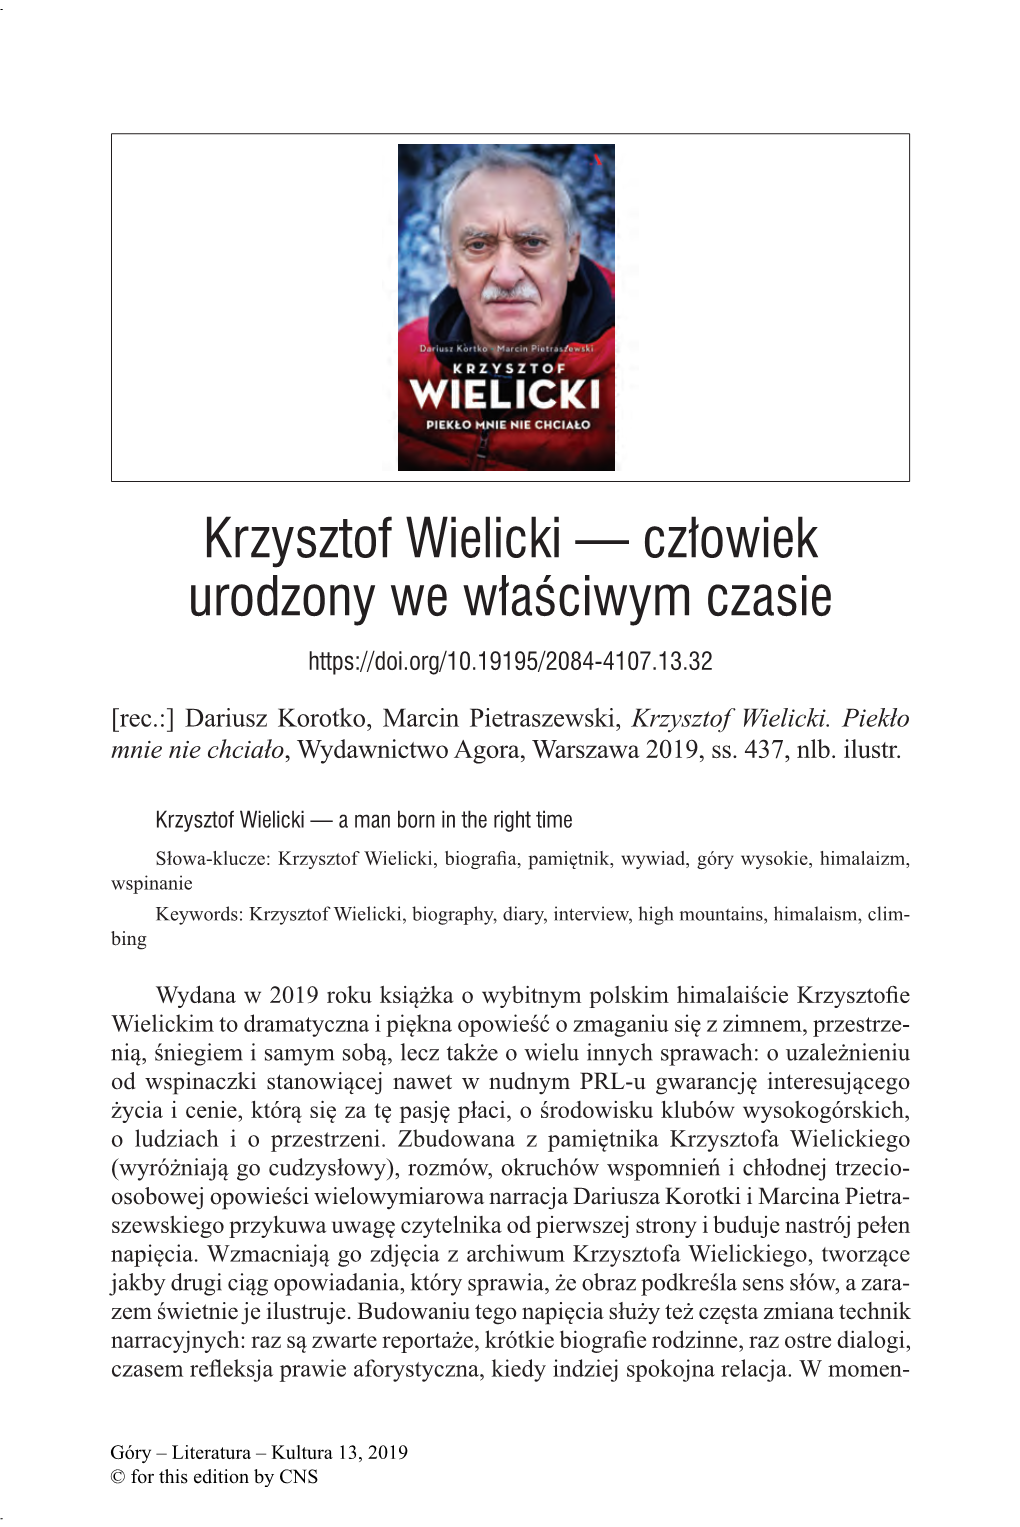 Krzysztof Wielicki — Człowiek Urodzony We Właściwym Czasie